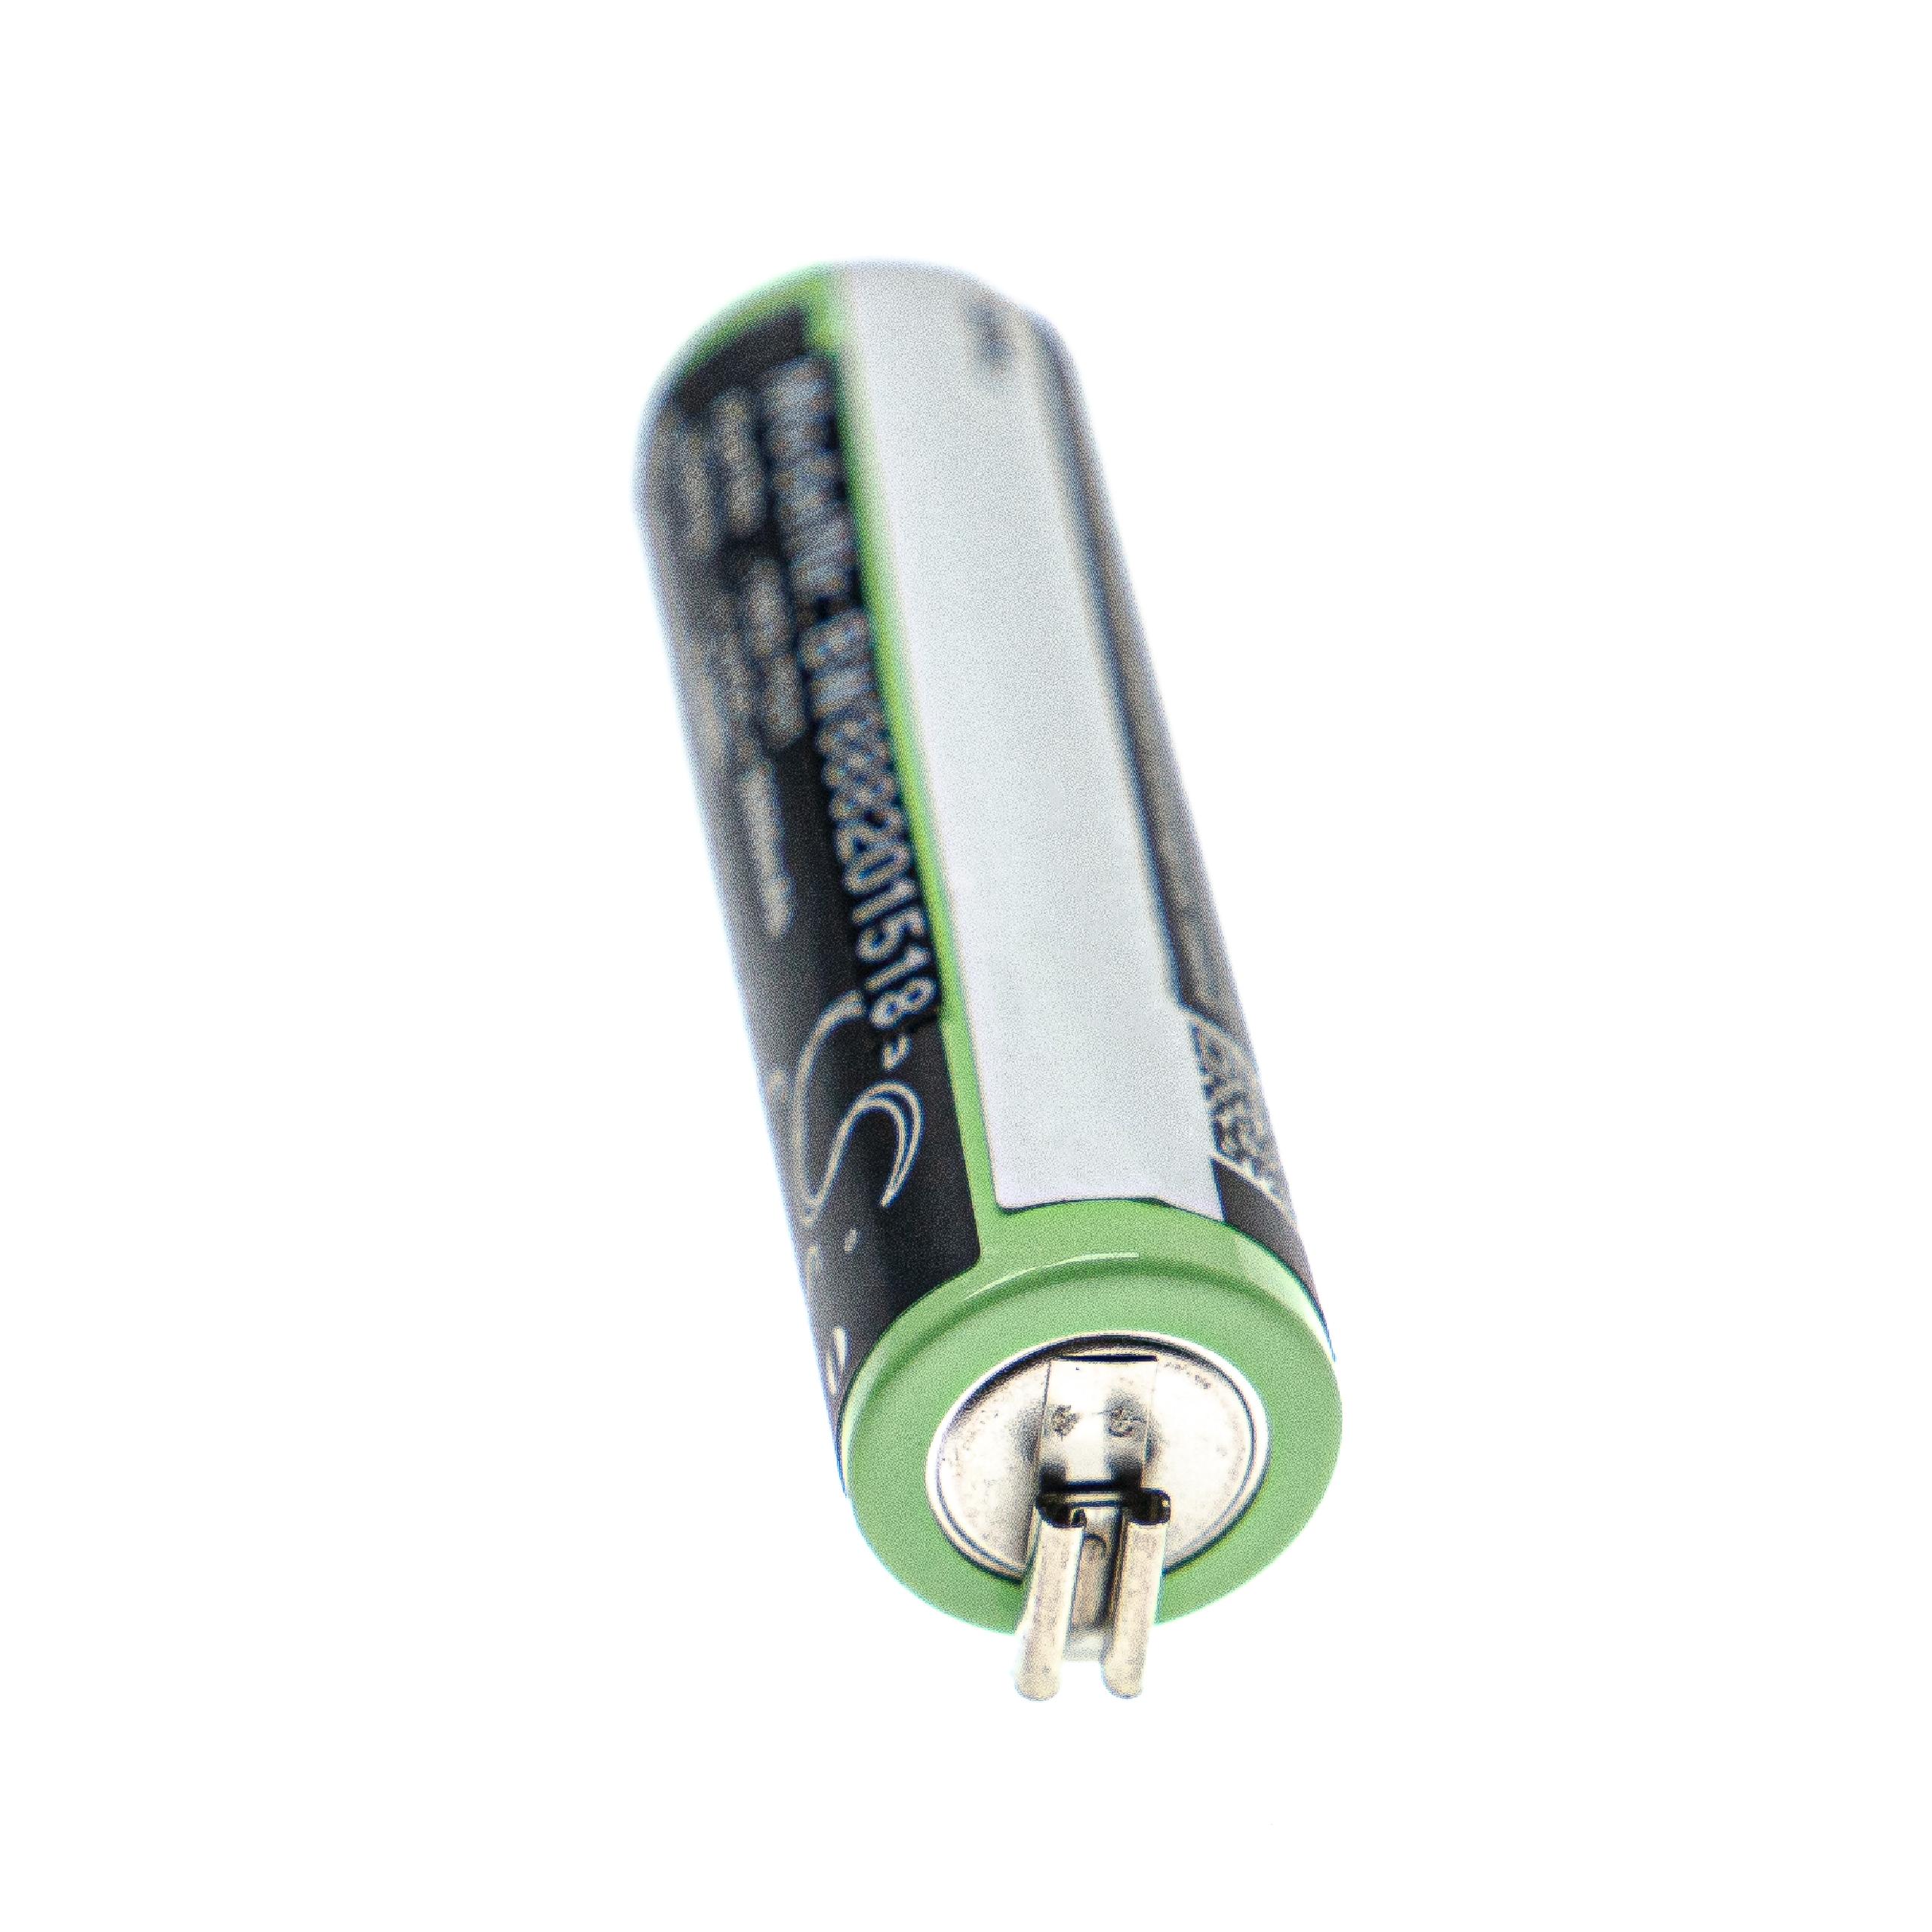 Batterie remplace Moser 1852-7531 pour rasoir électrique - 2000mAh 1,2V NiMH